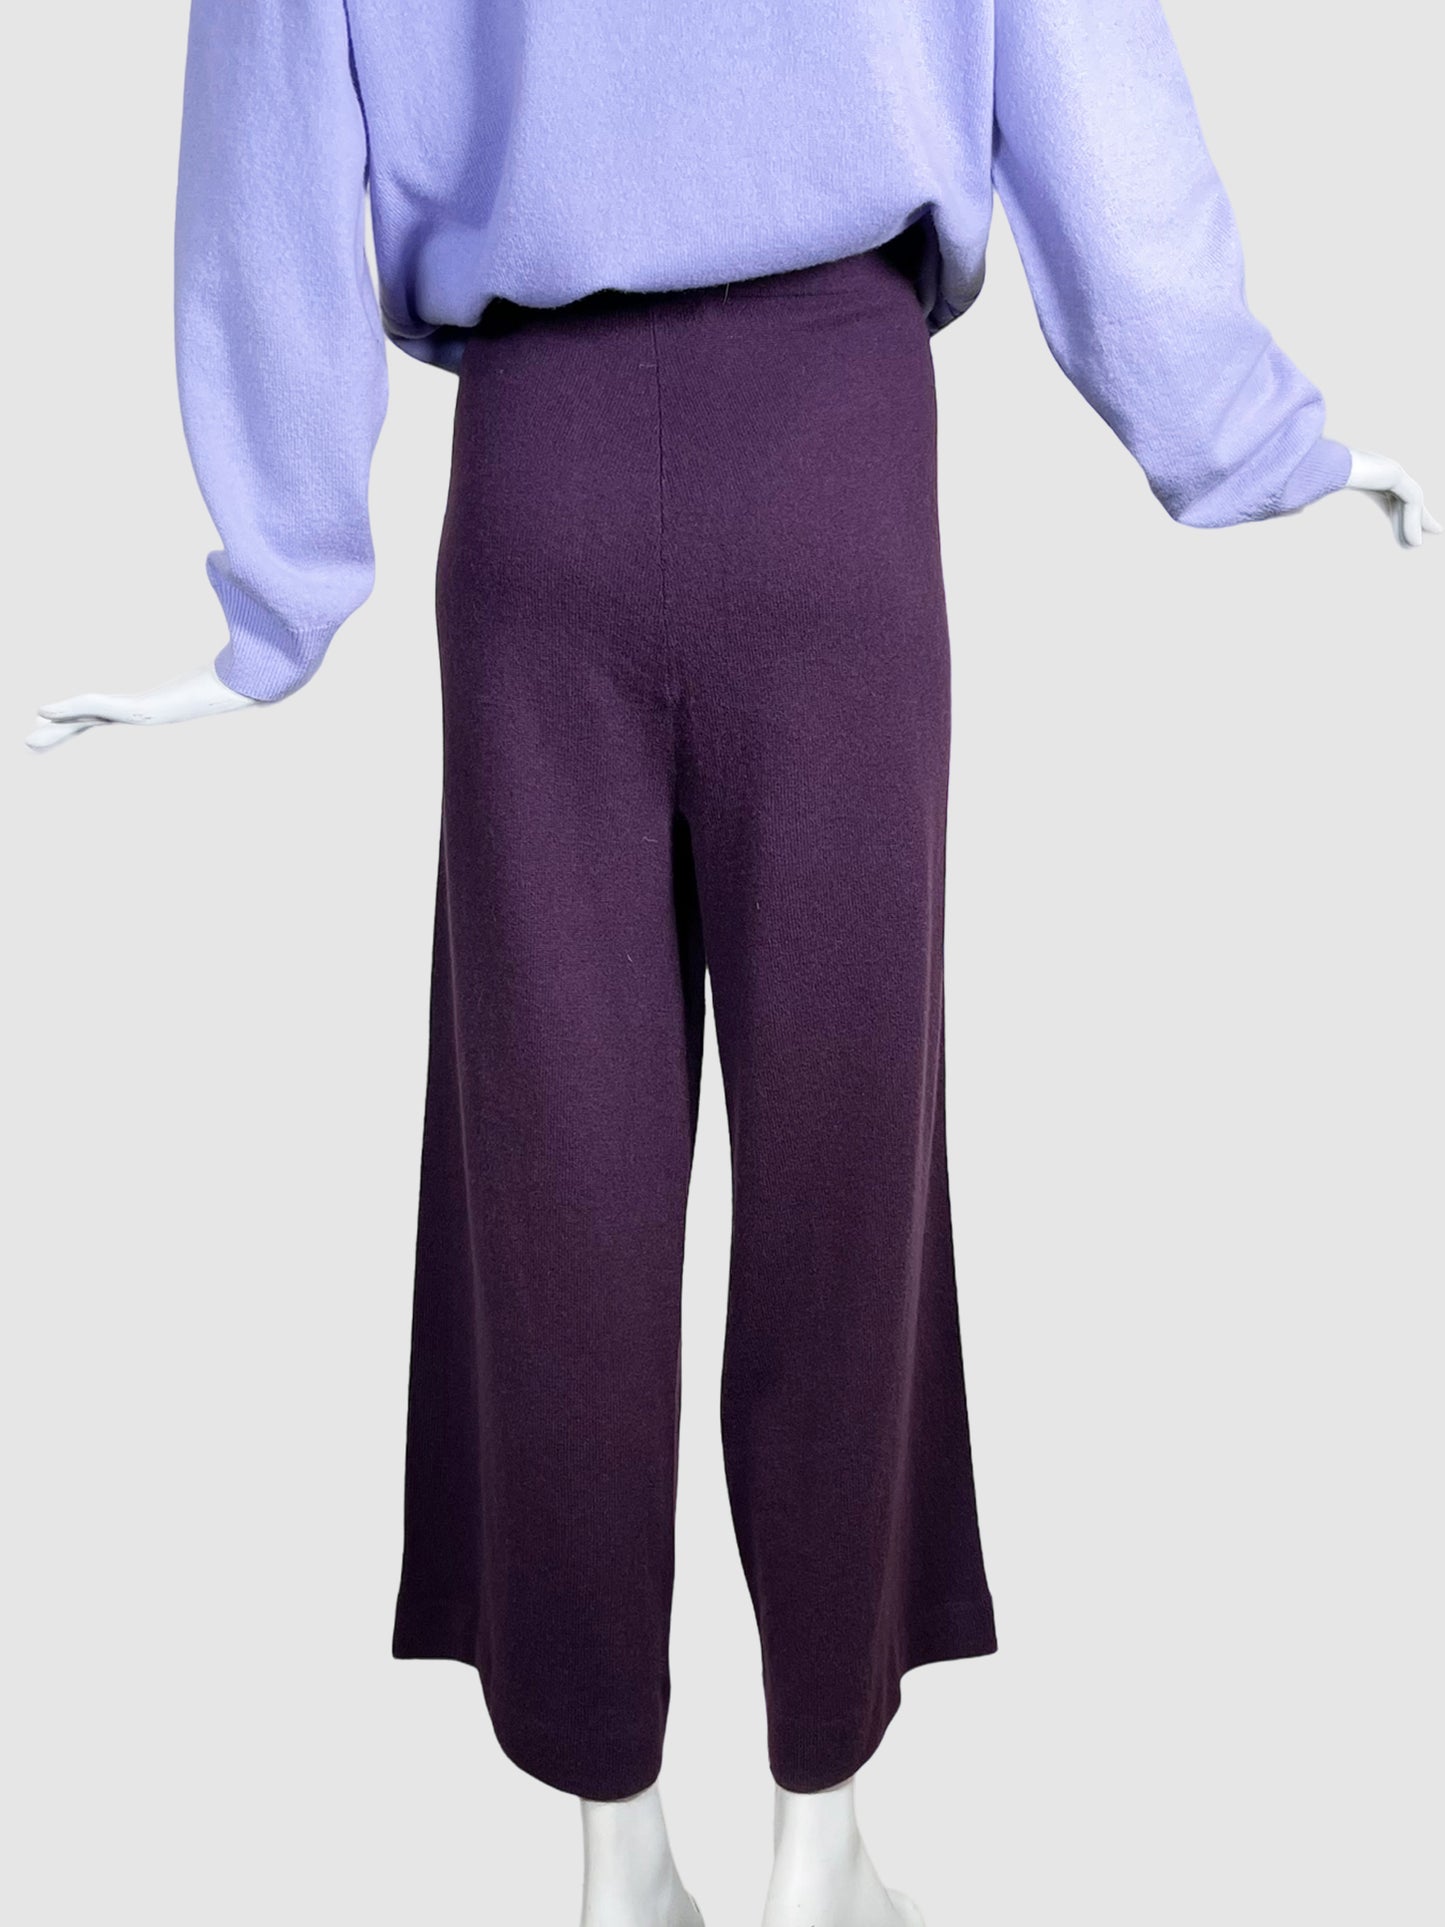 Neiman Marcus Cashmere Pants - Size XL